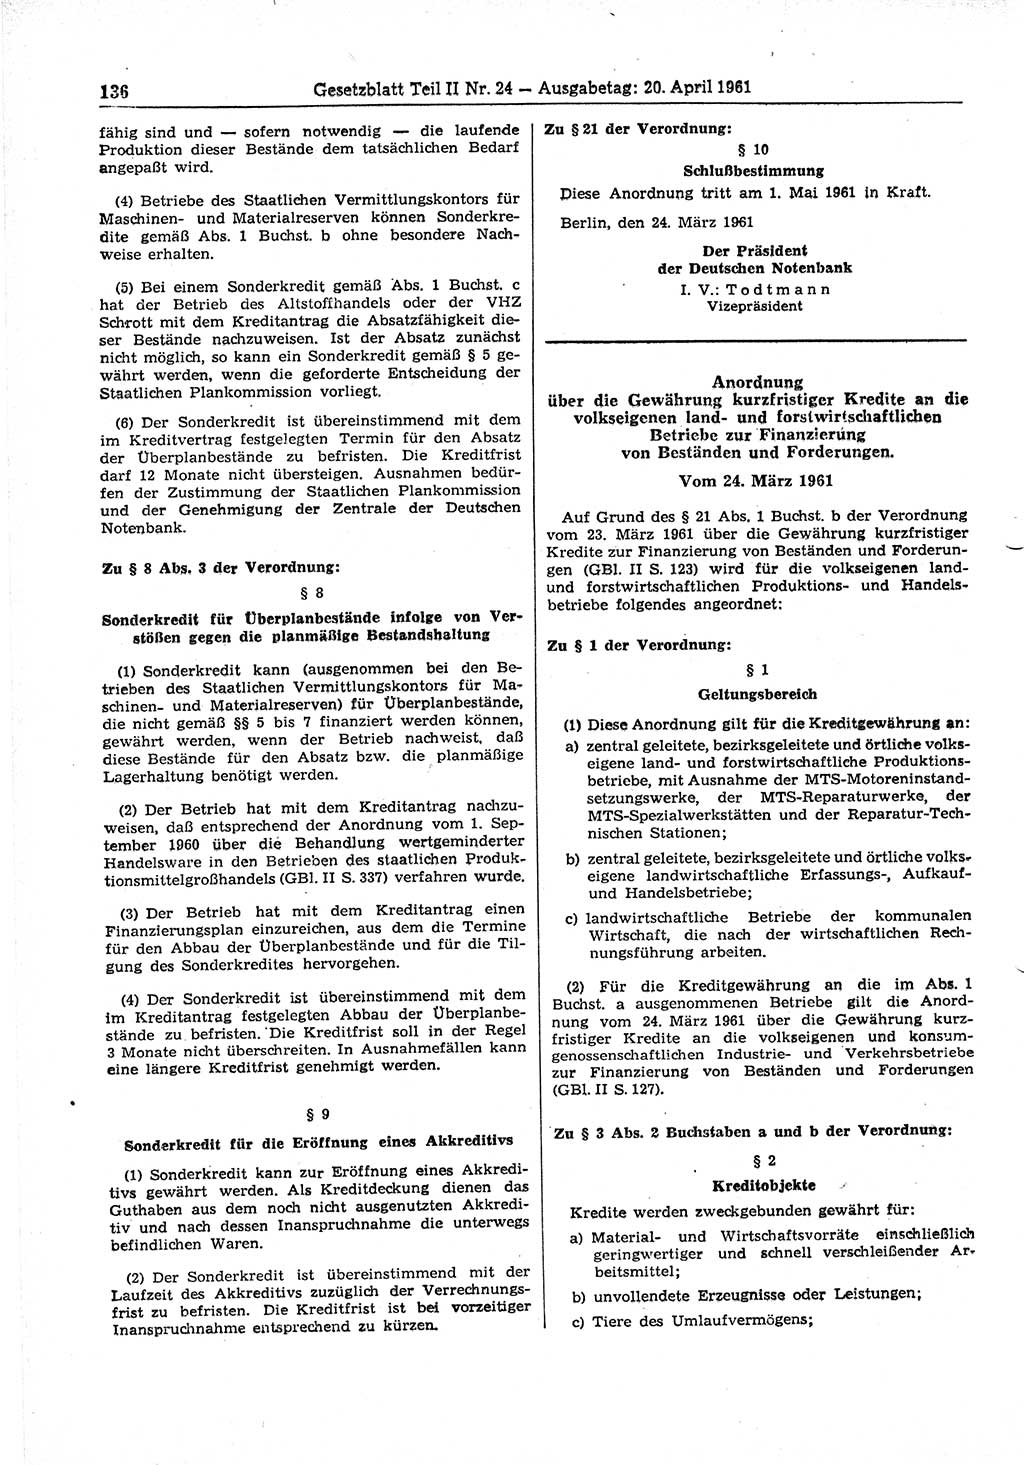 Gesetzblatt (GBl.) der Deutschen Demokratischen Republik (DDR) Teil ⅠⅠ 1961, Seite 136 (GBl. DDR ⅠⅠ 1961, S. 136)